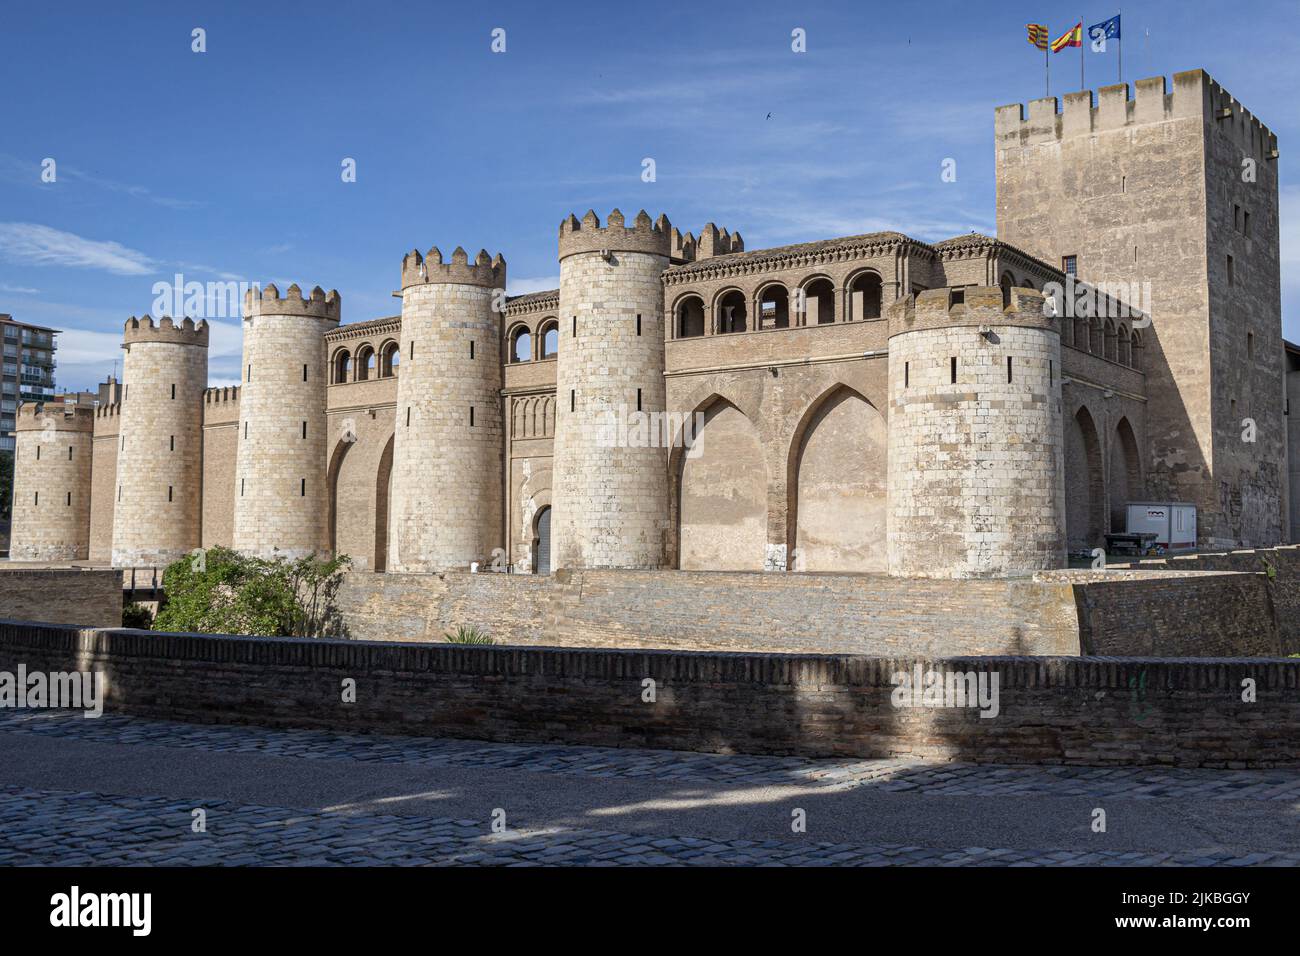 El Palacio de la Aljaferia, palacio islámico en la ciudad de Zaragoza en Aragón, España Foto de stock